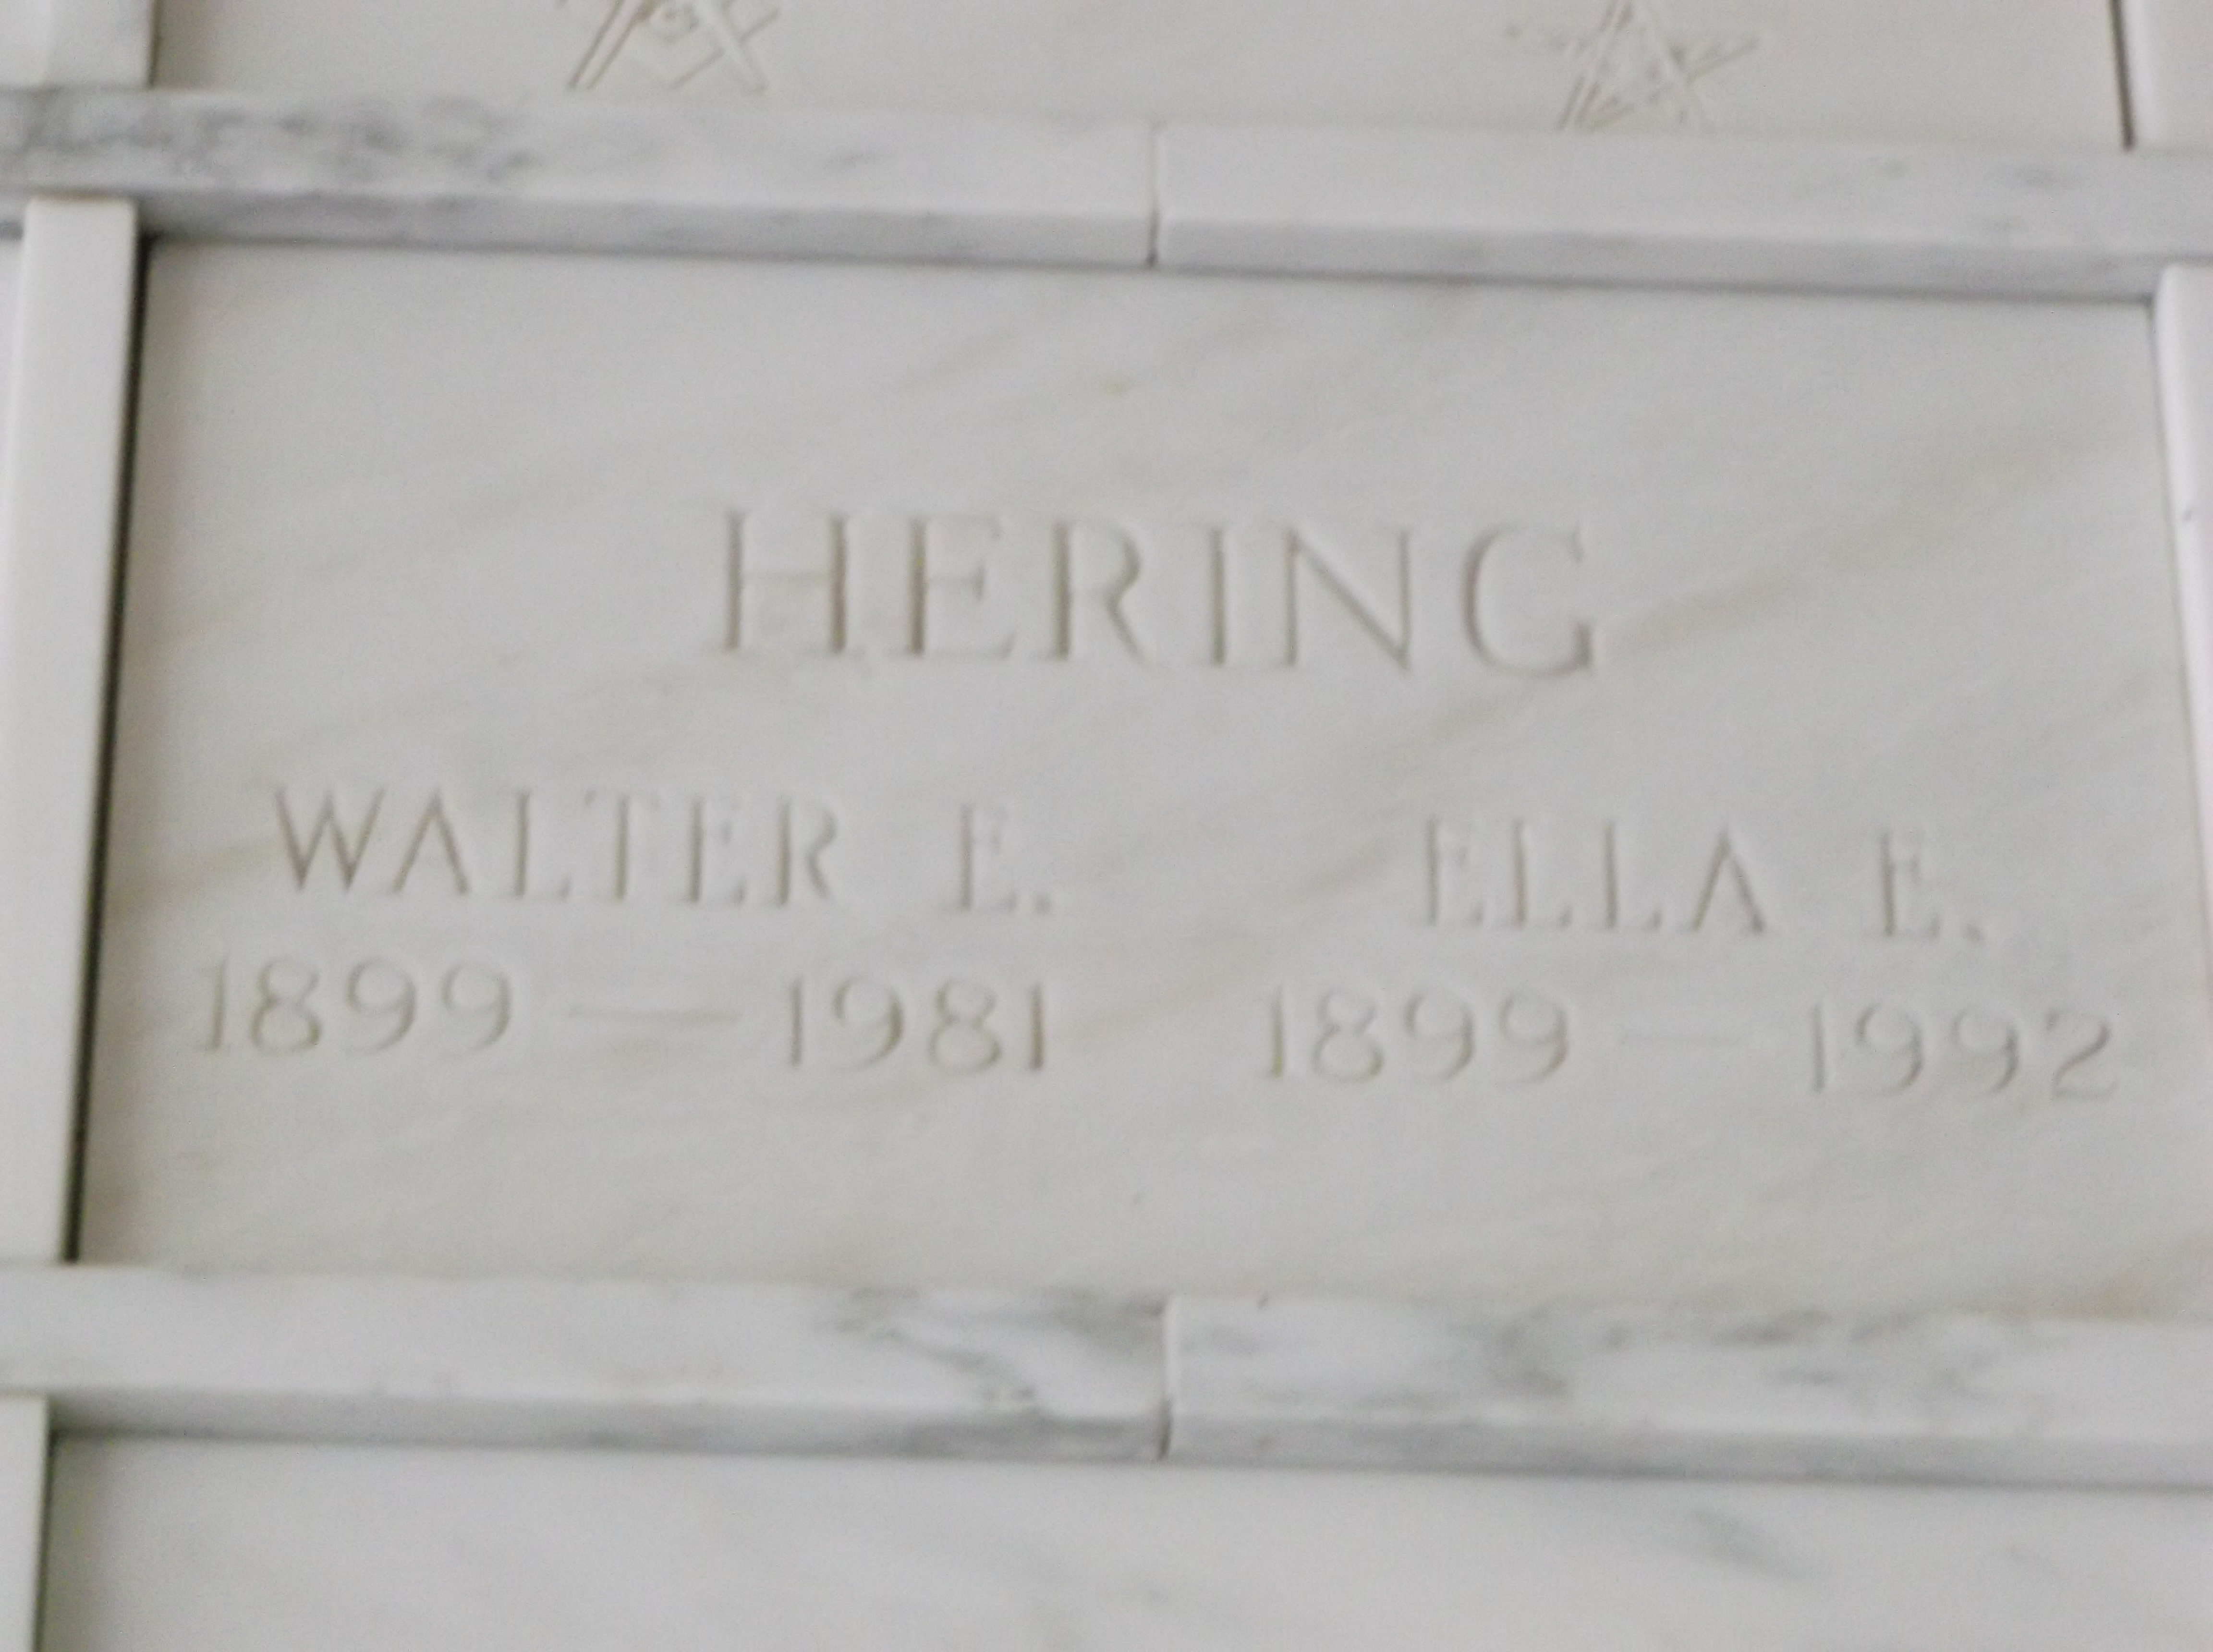 Walter E Hering